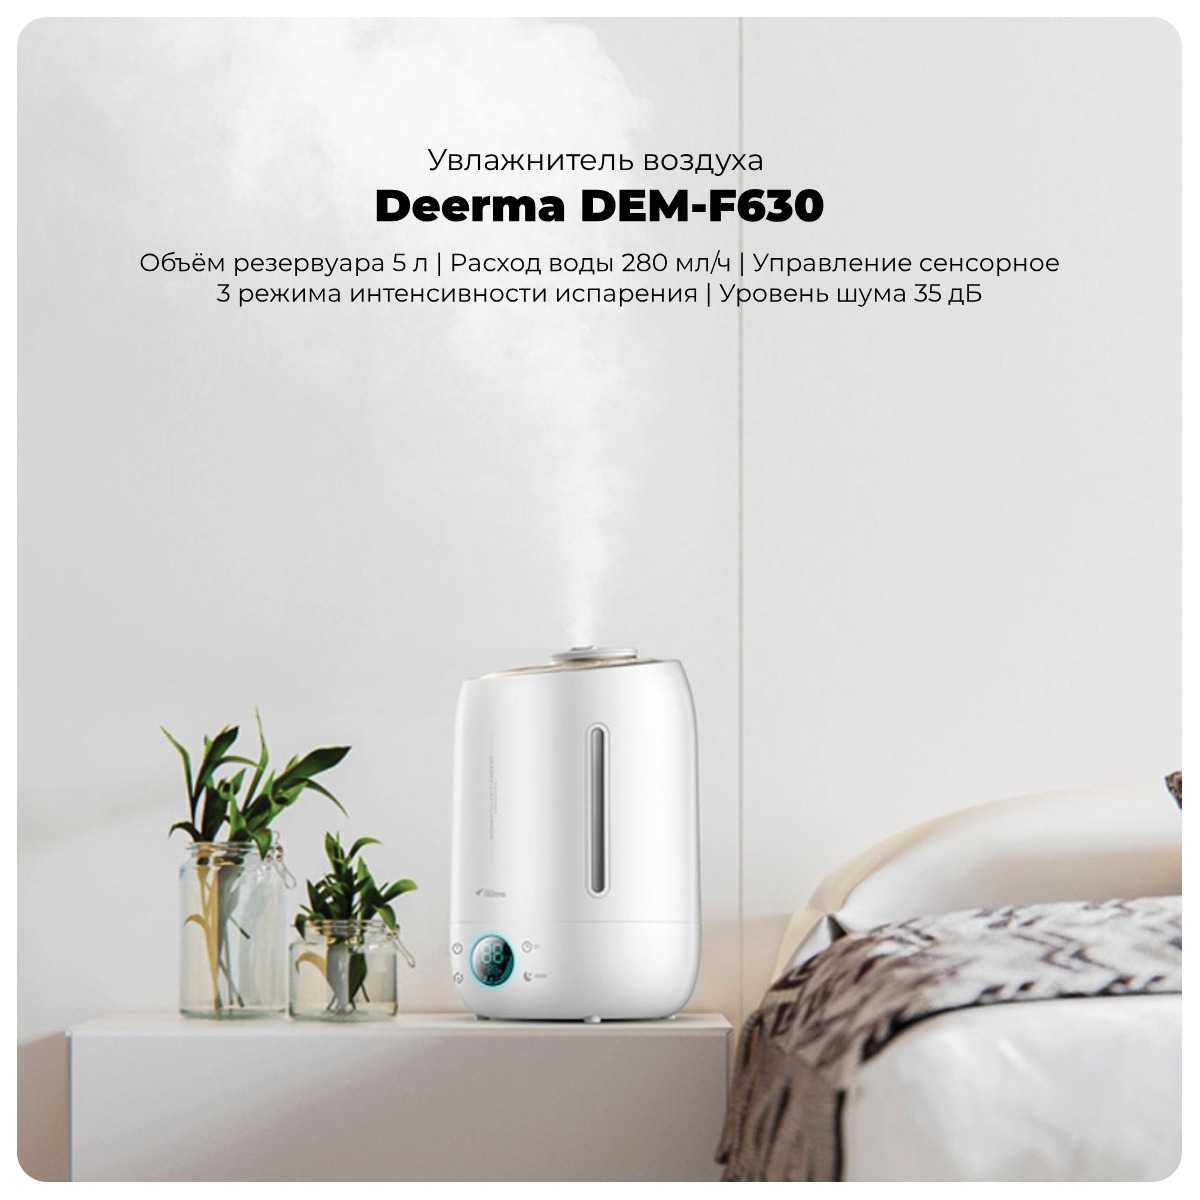 Deerma-DEM-F630-01